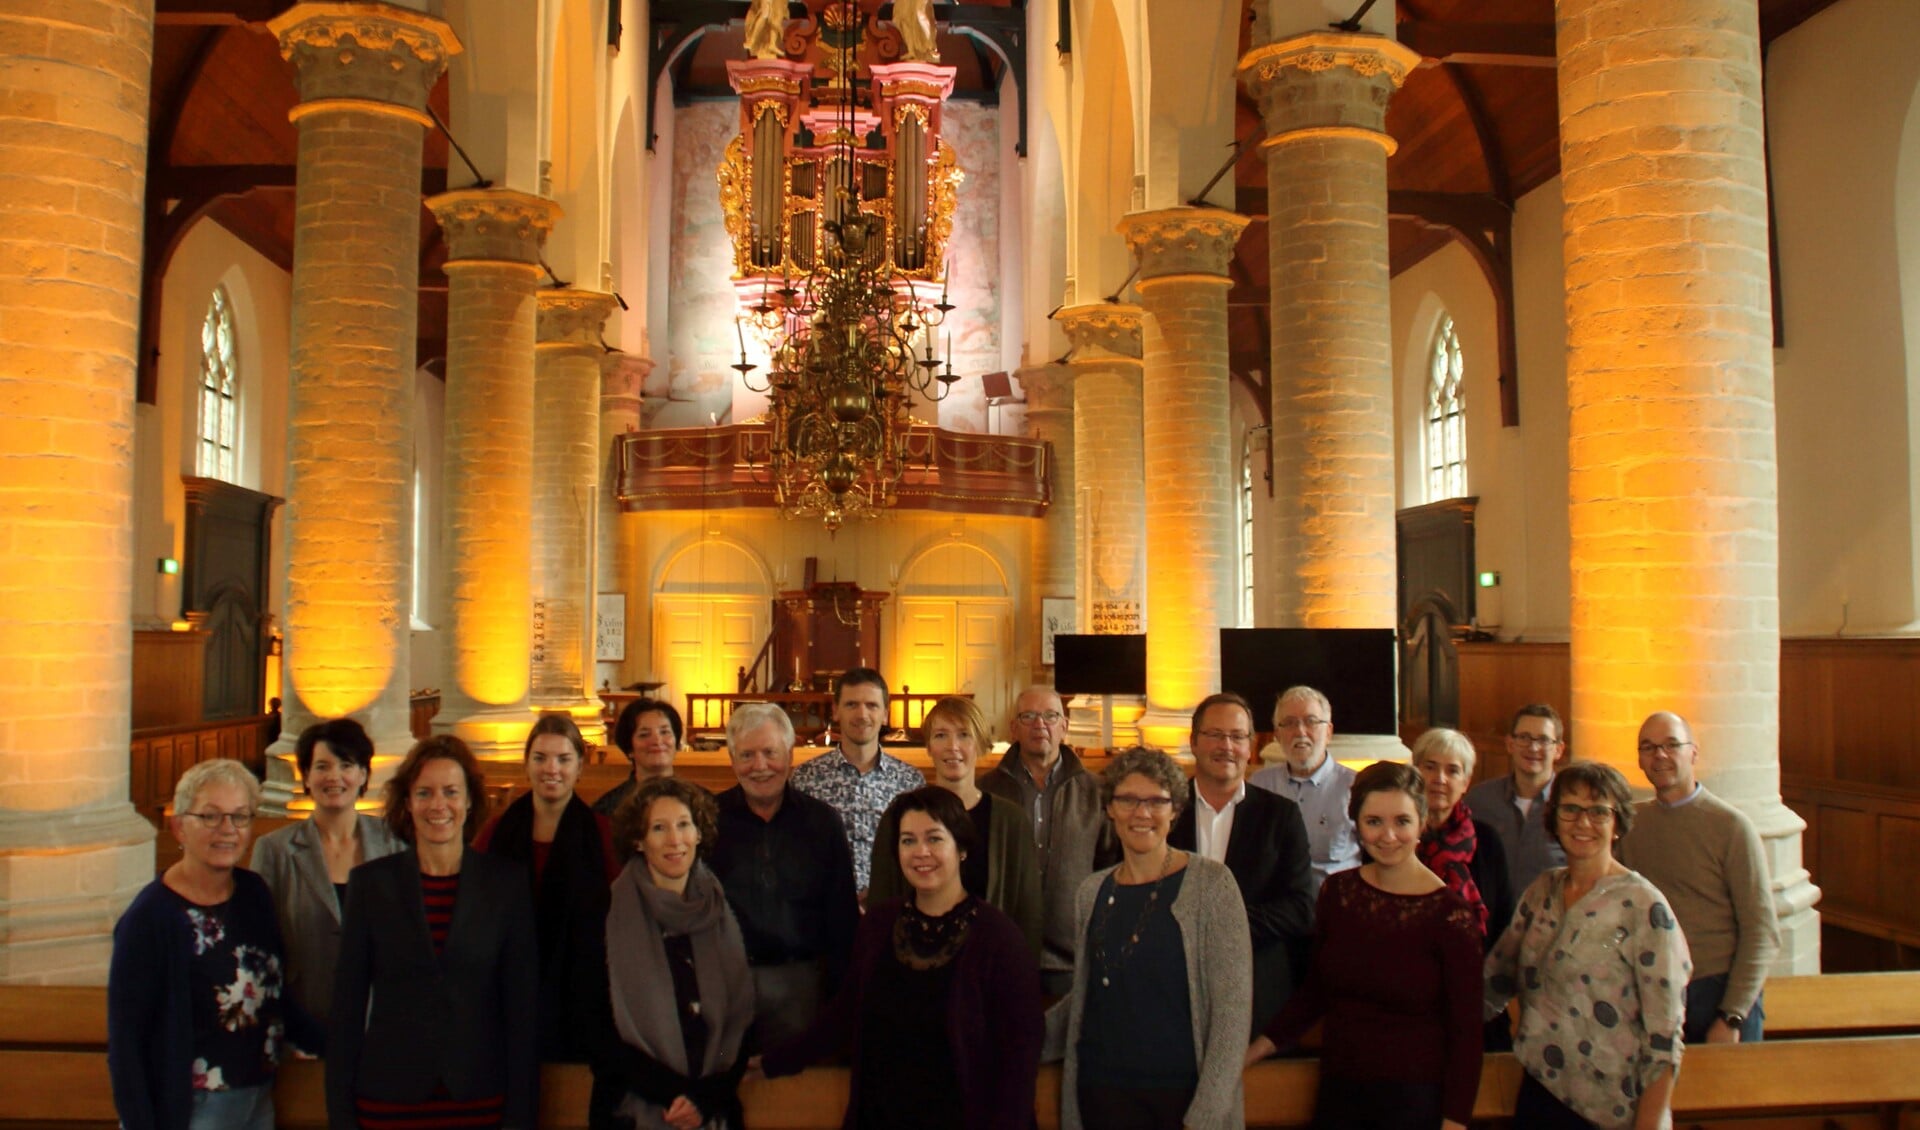 Vocaal ensemble Magnificat brengt o.l.v. dirigent Mirjam van den Hoek bekende en minder bekende kerstliederen ten gehore in de Hervormde Kerk van Dirksland. Het orgel wordt bespeeld door Matthijs van der Wilt. 